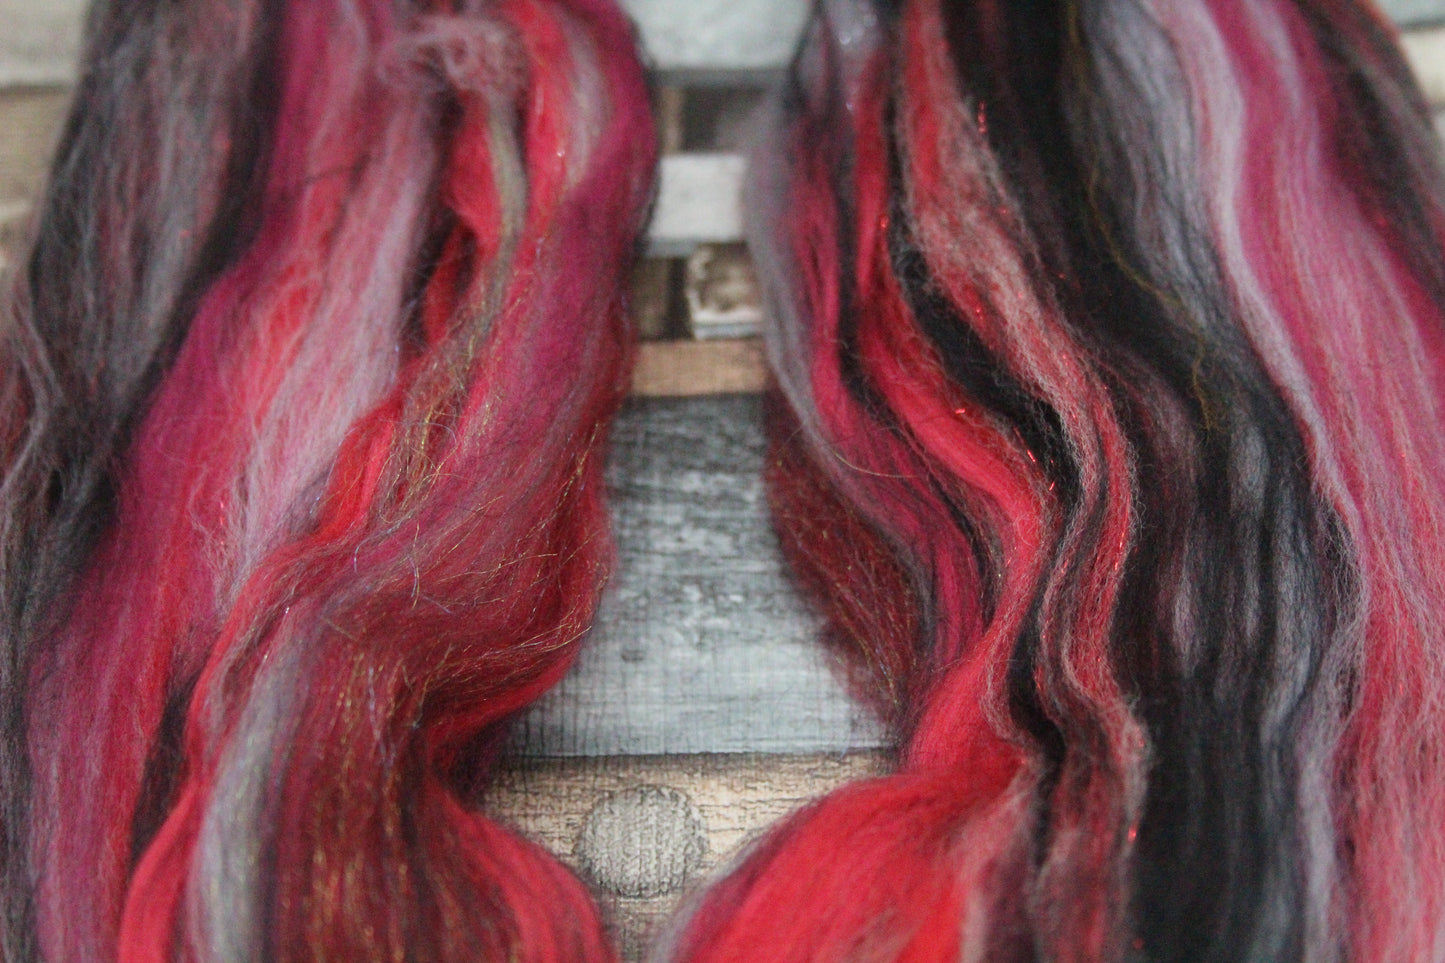 Merino Wool Blend - Red Grey Black - 21 grams / 0.7 oz  - Fibre for felting, weaving or spinning